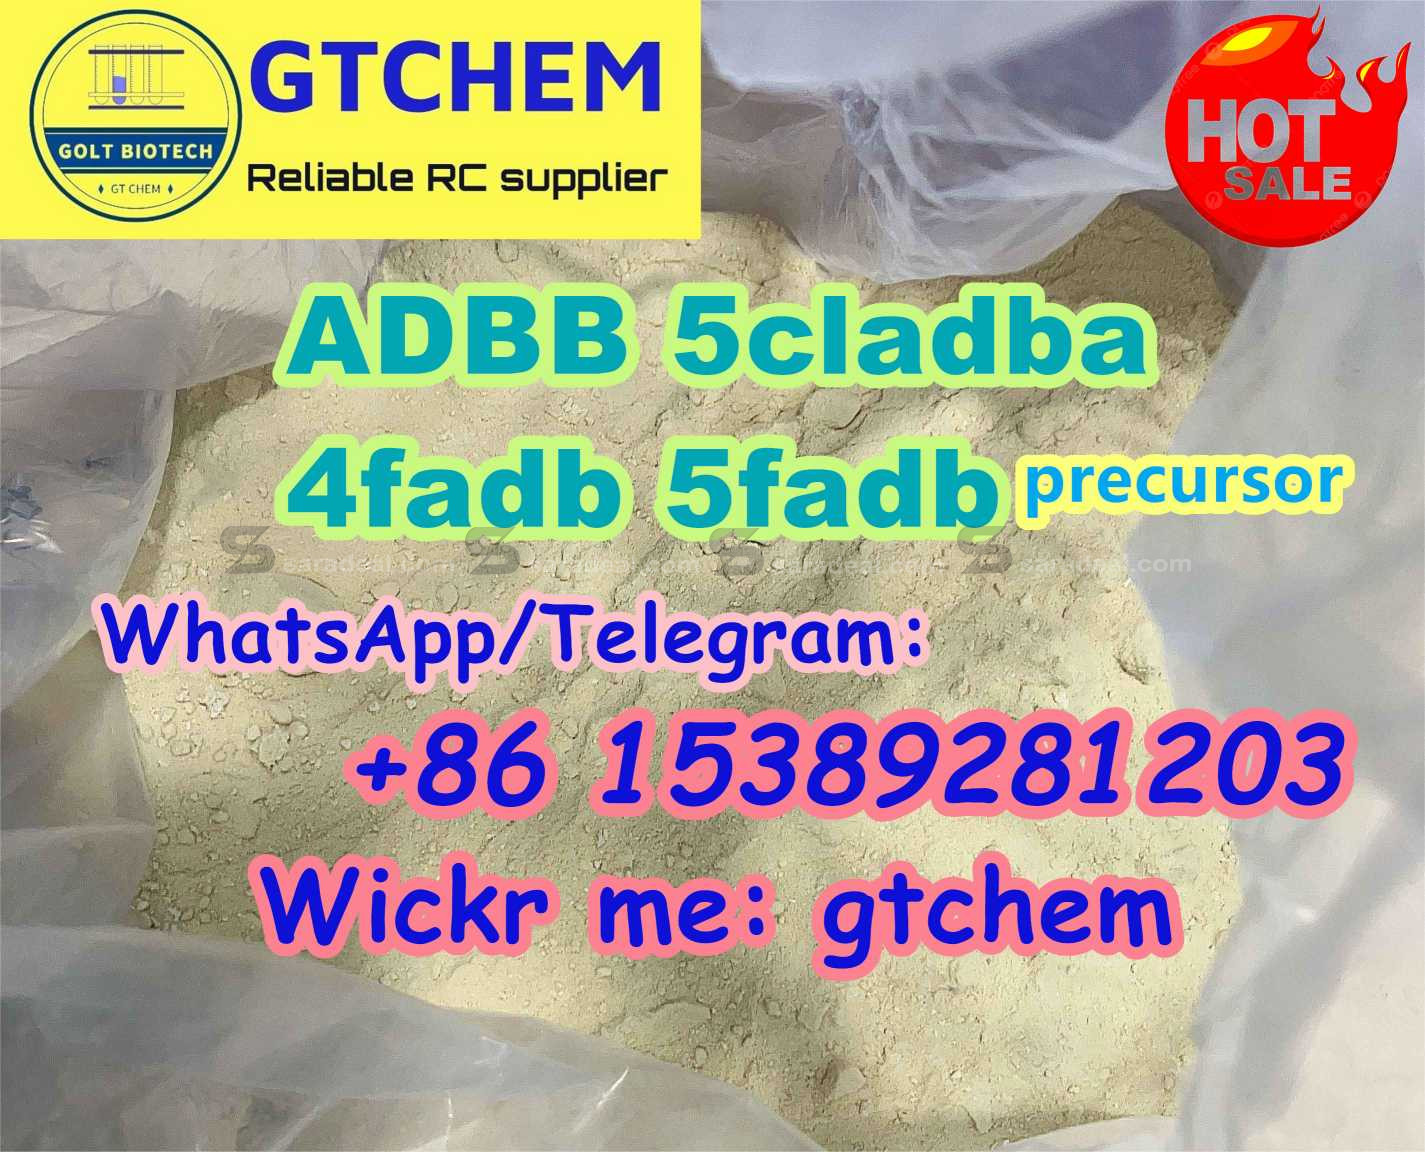 Adbb chemical adb-b adbb buy 5cladb 5cladba jwh018